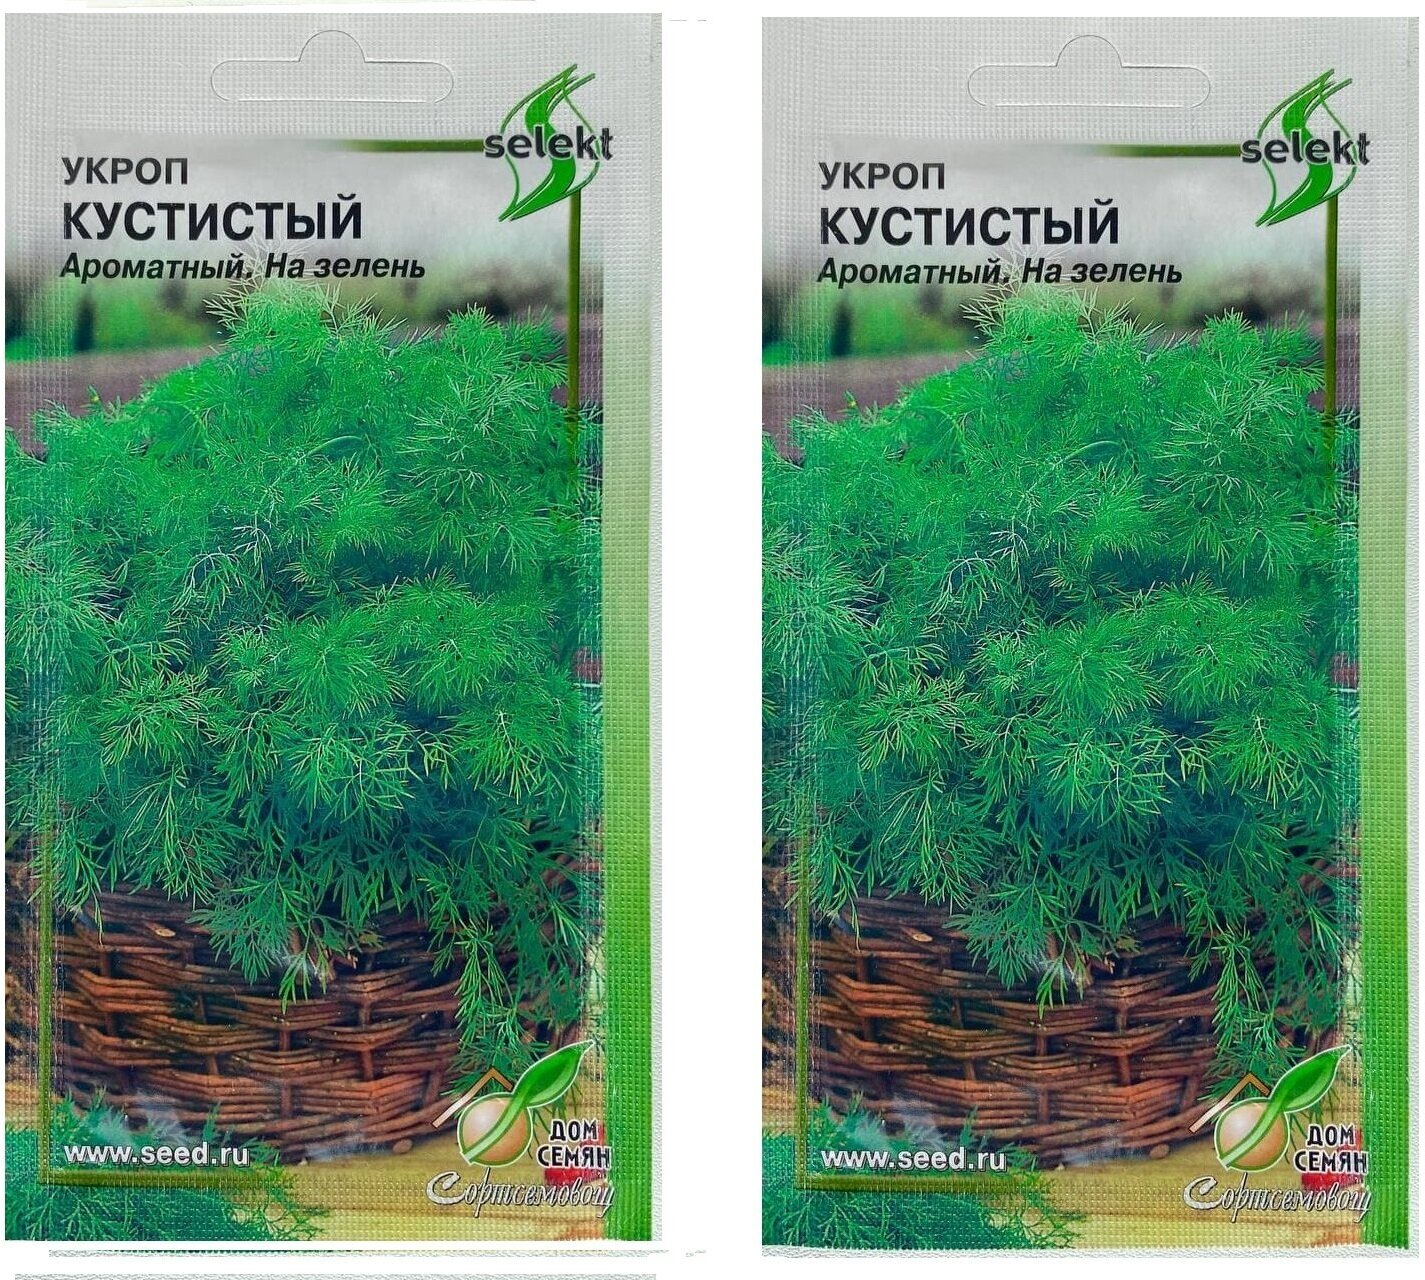 Укроп Кустистый ароматный, на зелень, 2 упаковки по 750 семян